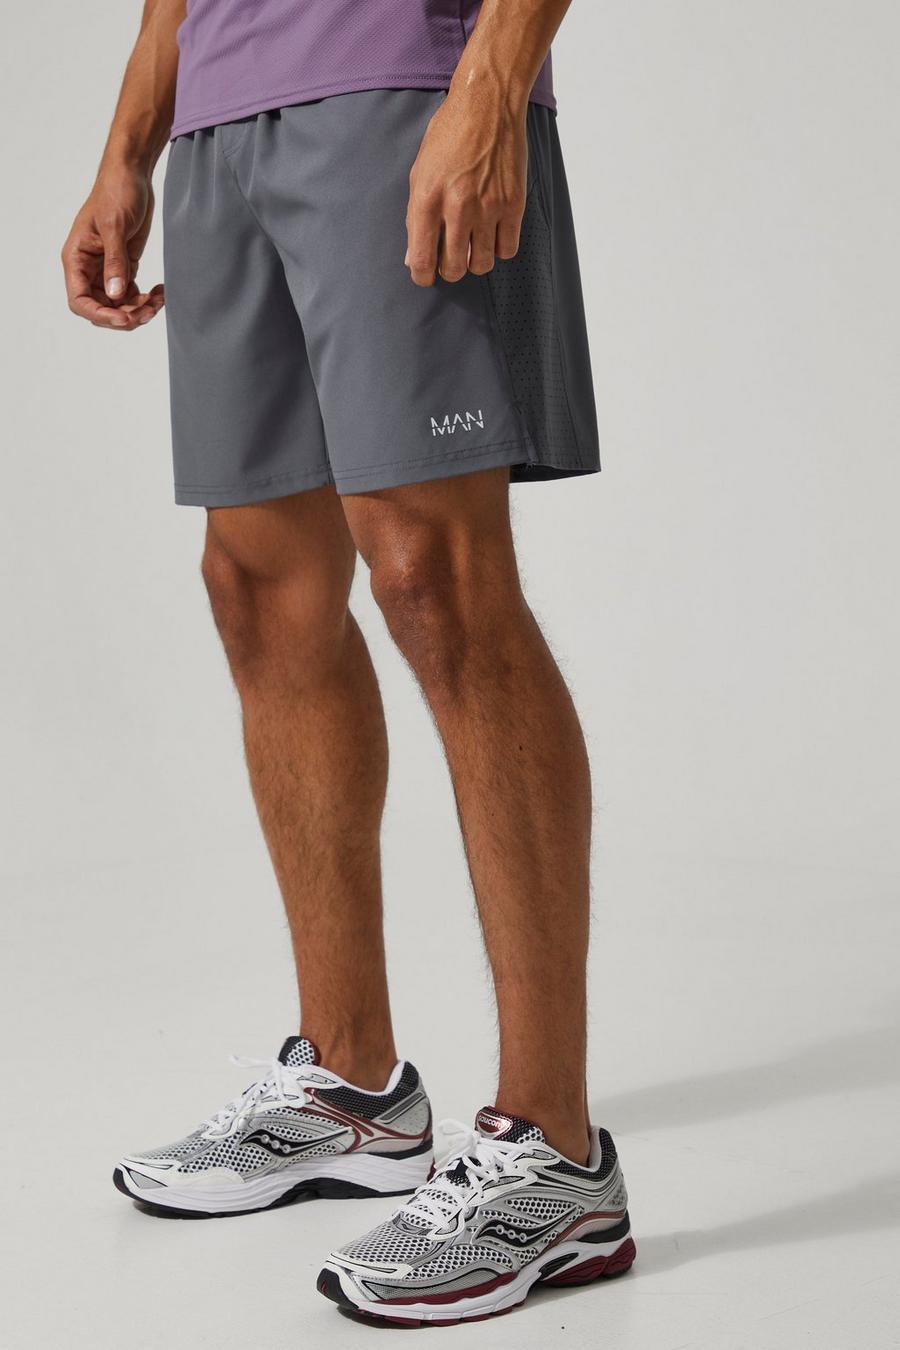 Man Active Mesh-Shorts, Charcoal grey